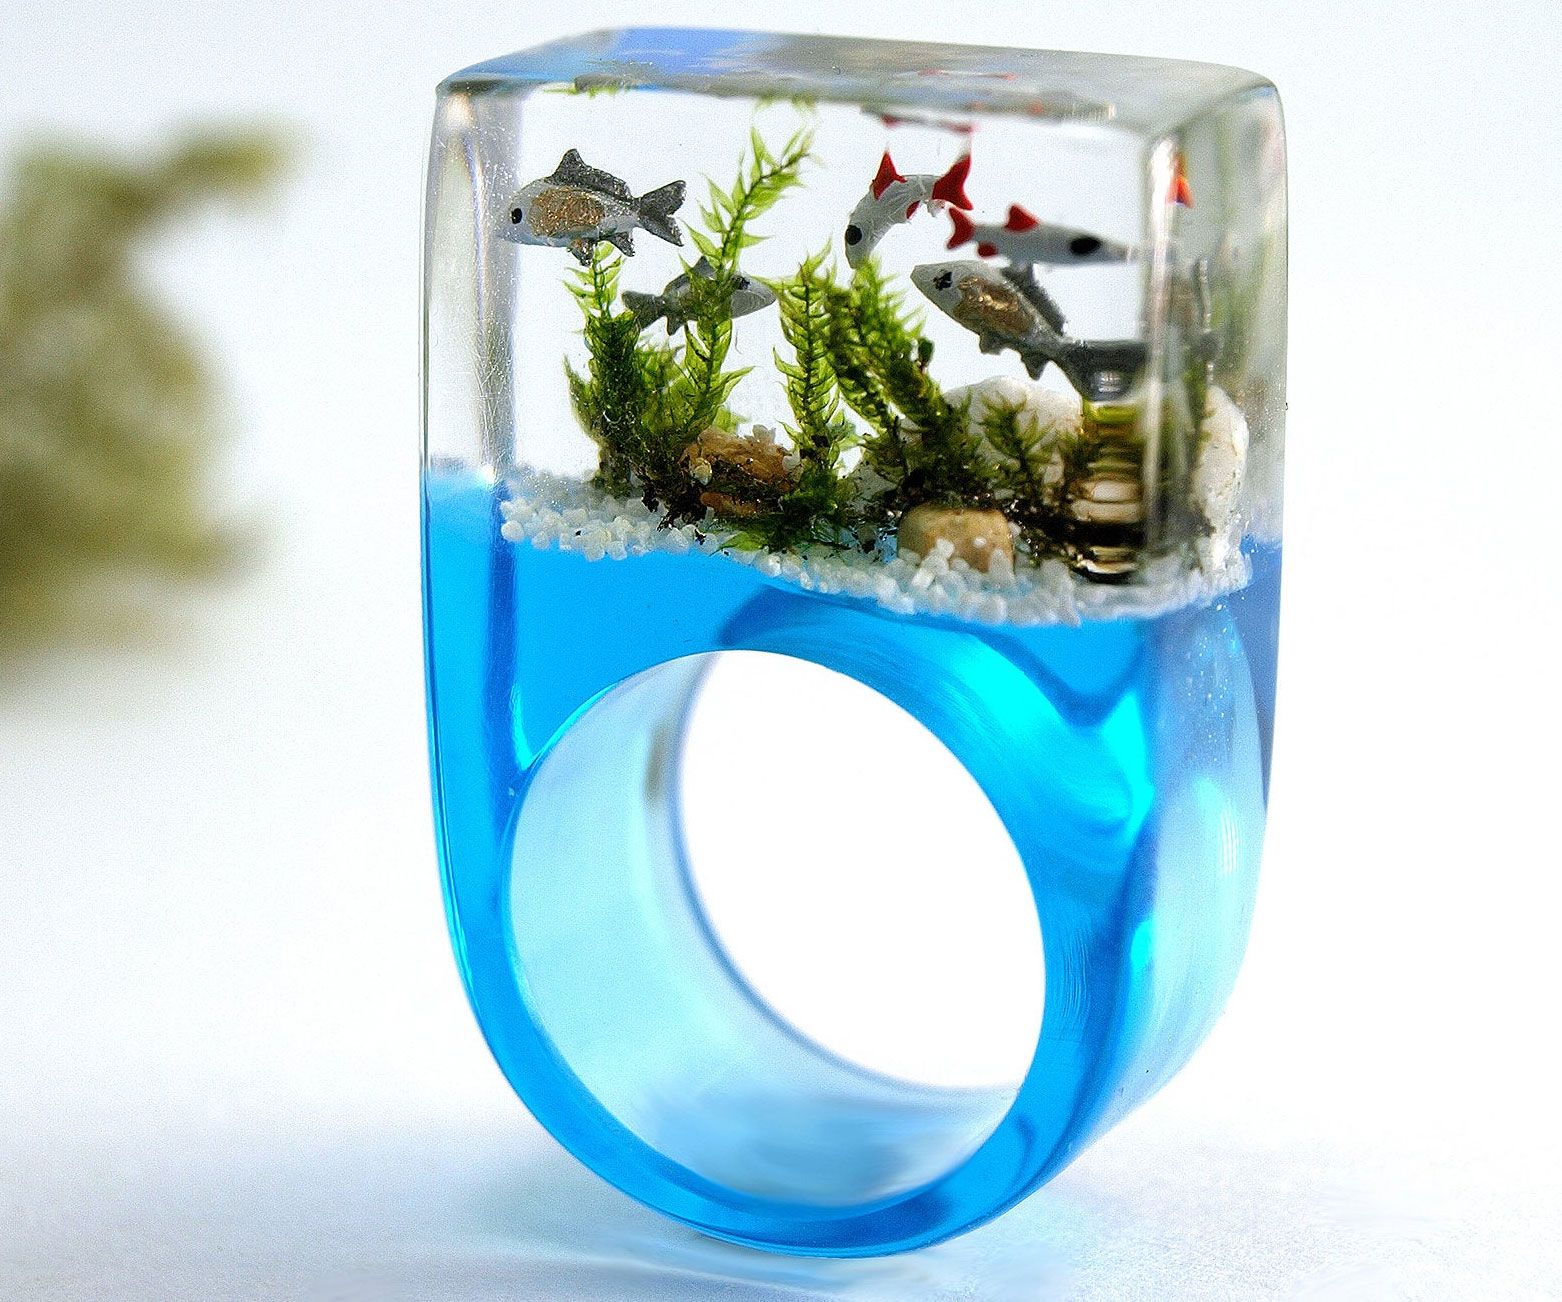 Miniature Aquarium Ring